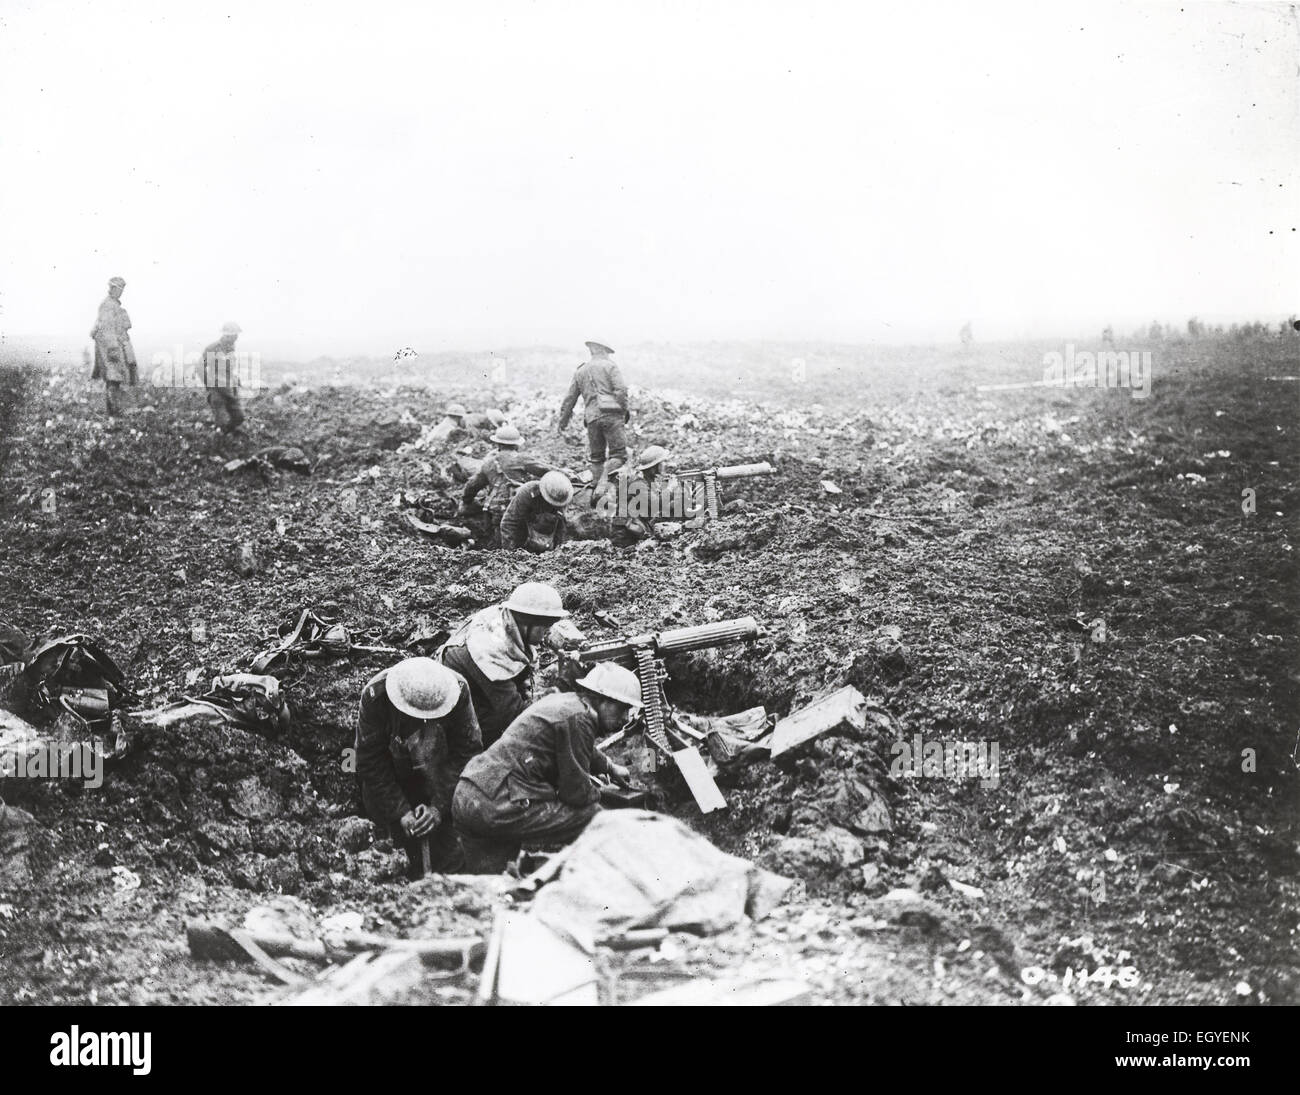 La Prima Guerra Mondiale La Battaglia di Vimy Ridge 1917. Canadian mitraglieri stessi dif in fori di shell. Foto: Canadian Dept di difesa nazionale Foto Stock